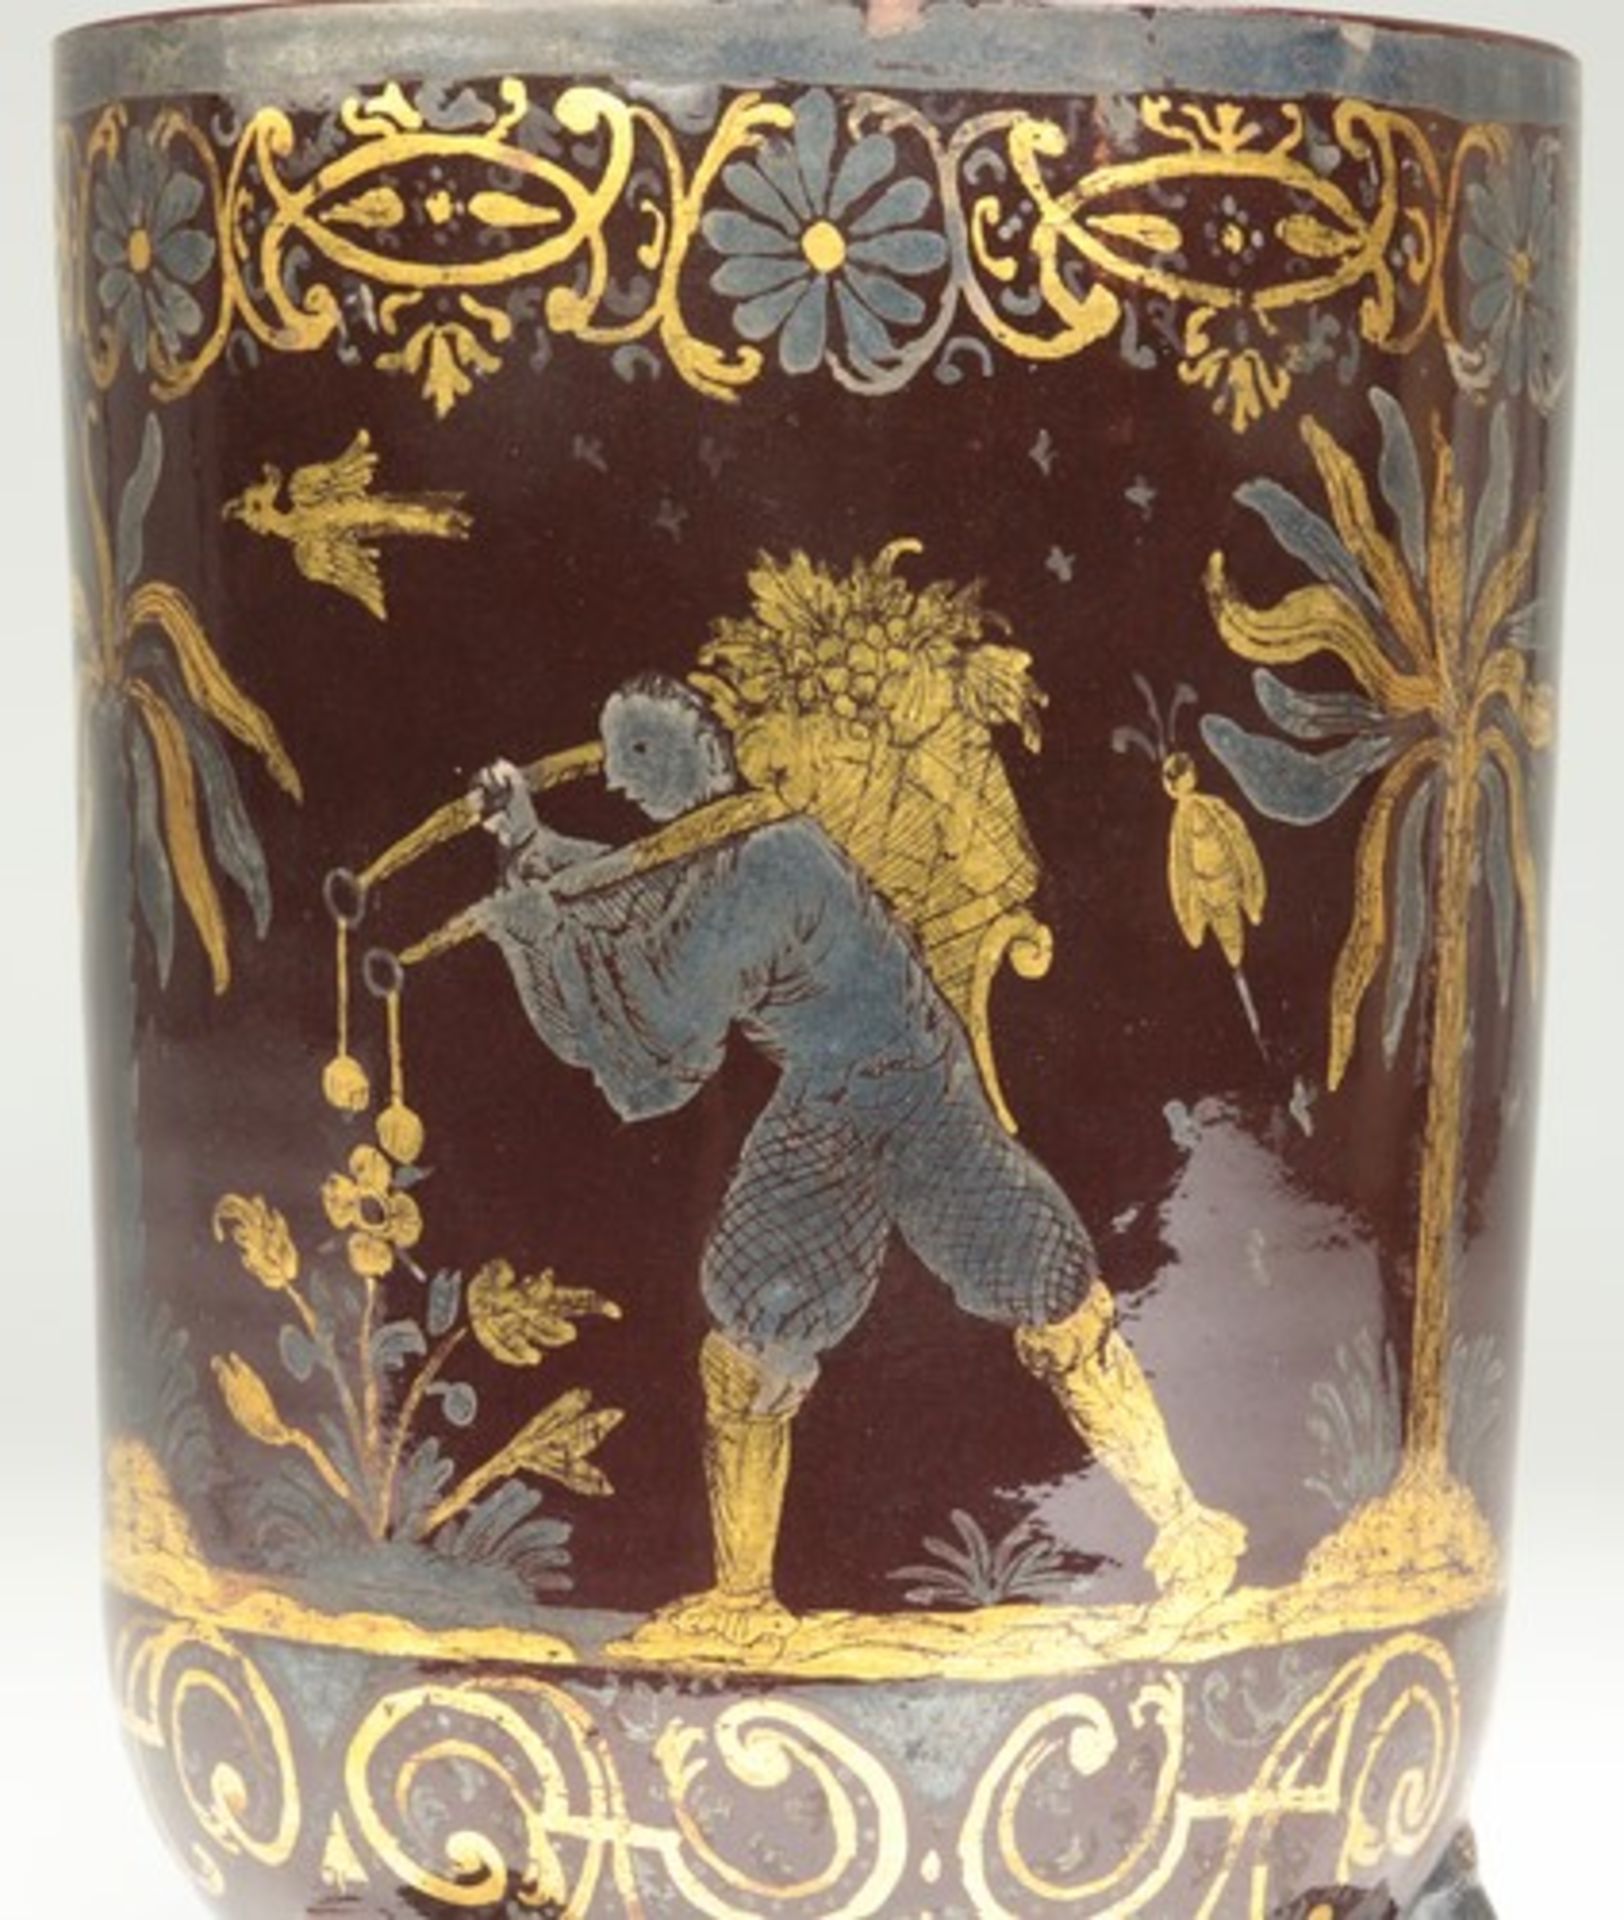 Fayence - Becher1728-1744, Bayreuth, Knöllerperiode, roter Scherben, kaffeebraune Glasur, seltener - Bild 9 aus 12